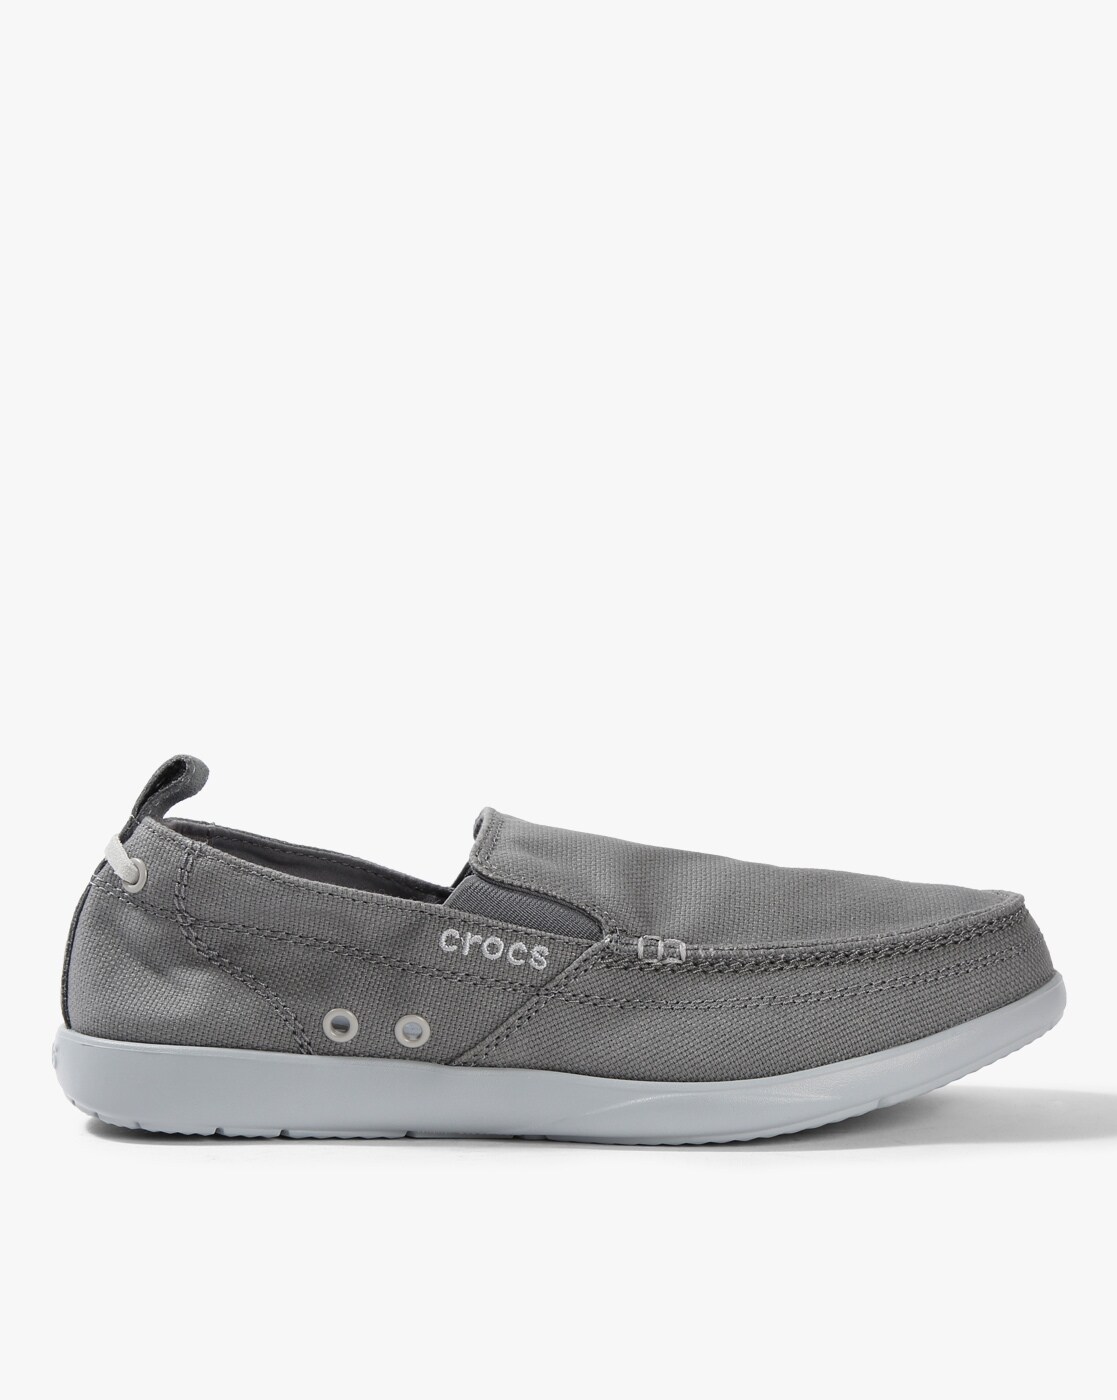 crocs casual shoes